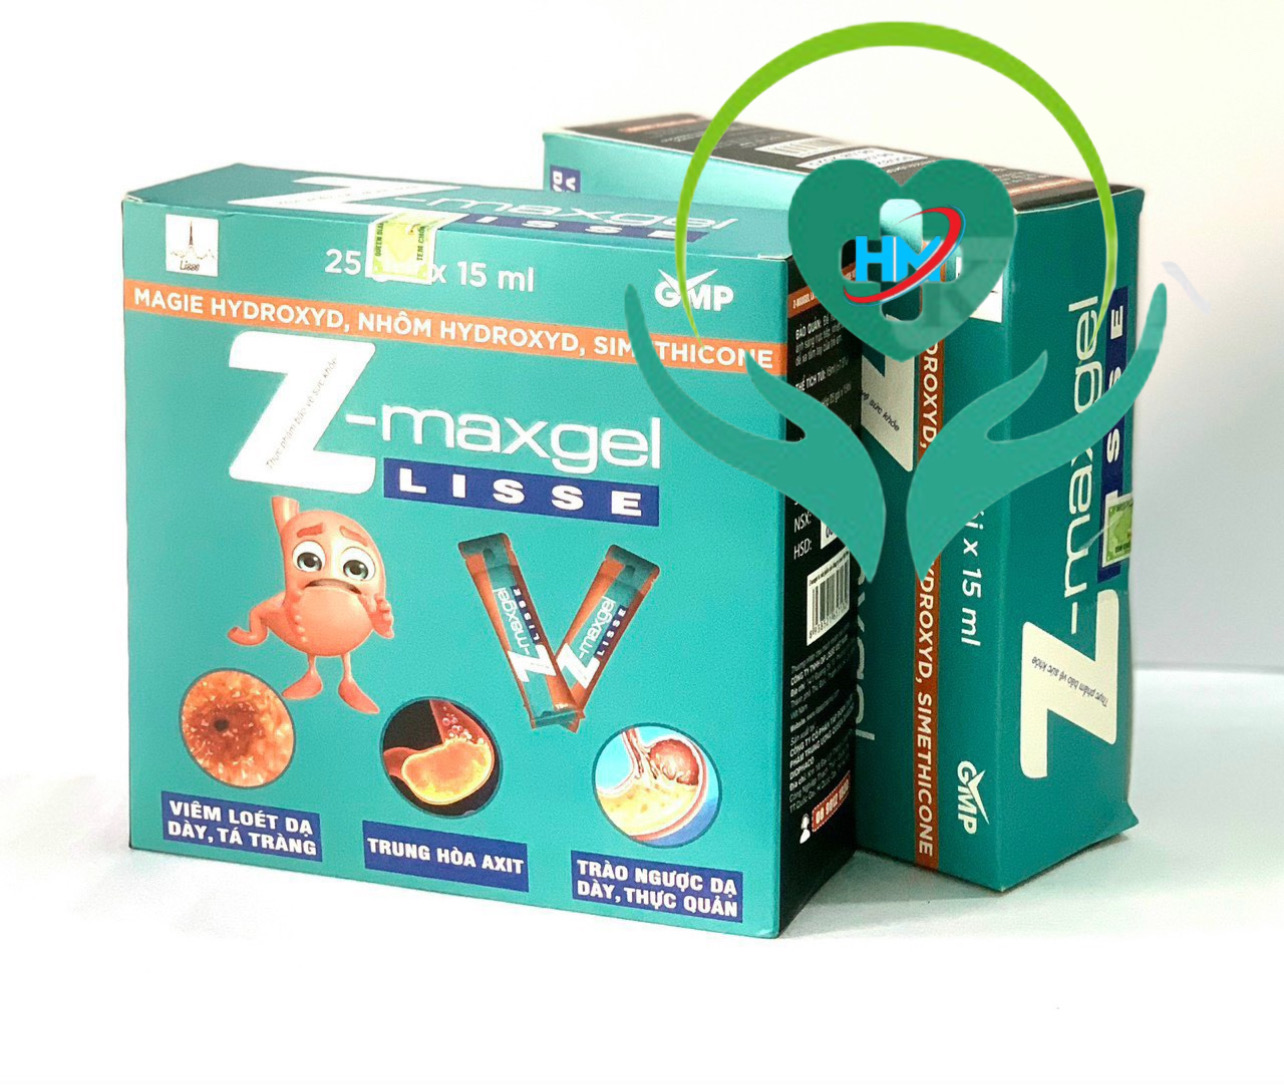 ￼Gel dạ dày Lisse Z-MAXGEL, hộp 25 gói x 15ml, hỗ trợ các bệnh về dà dày, tá tràng